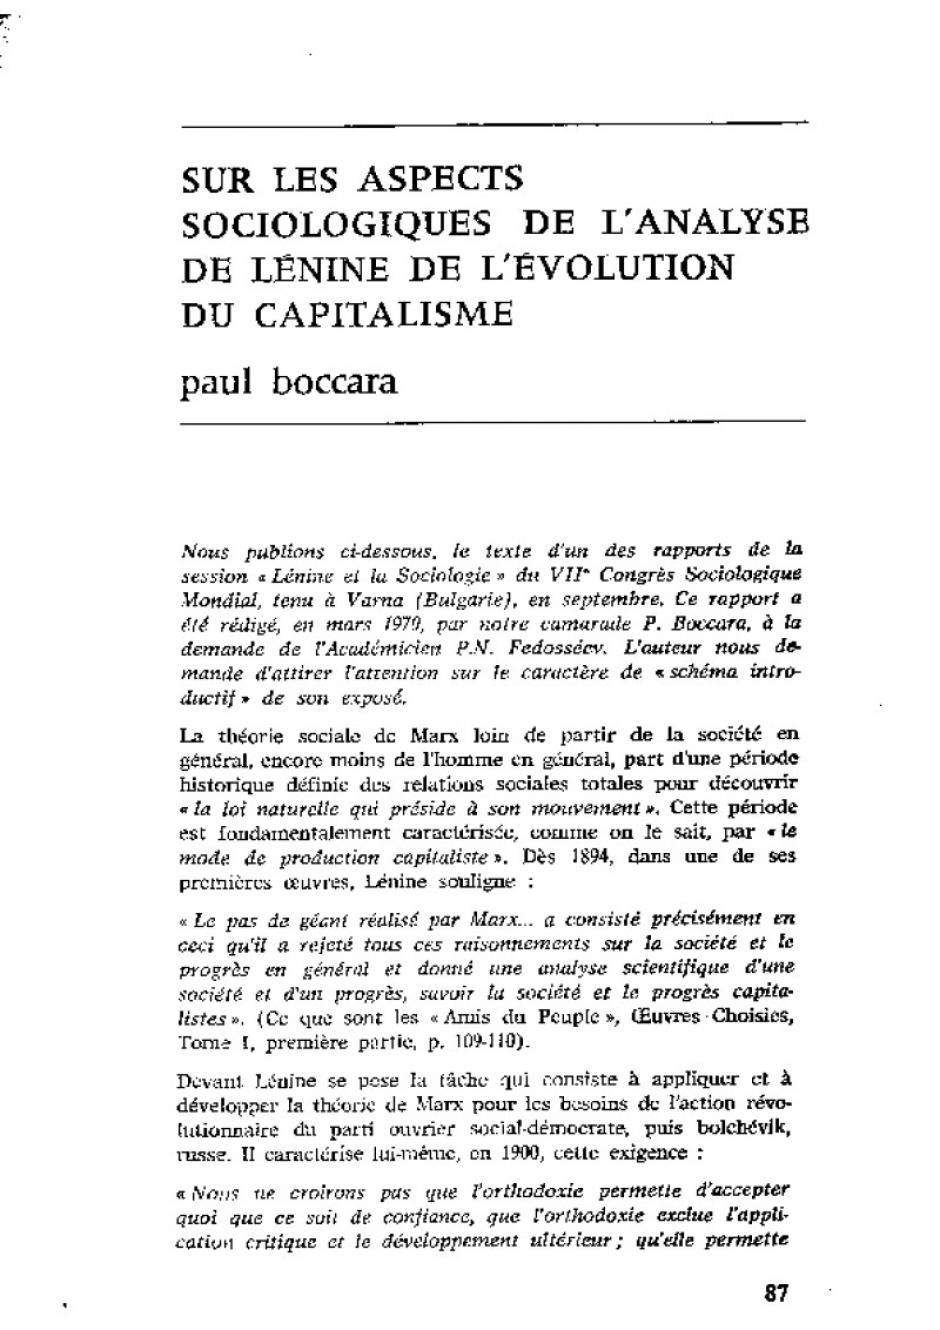 Lénine et les aspects  sociologiques de  l'évolution du capitalisme. Octobre 1970